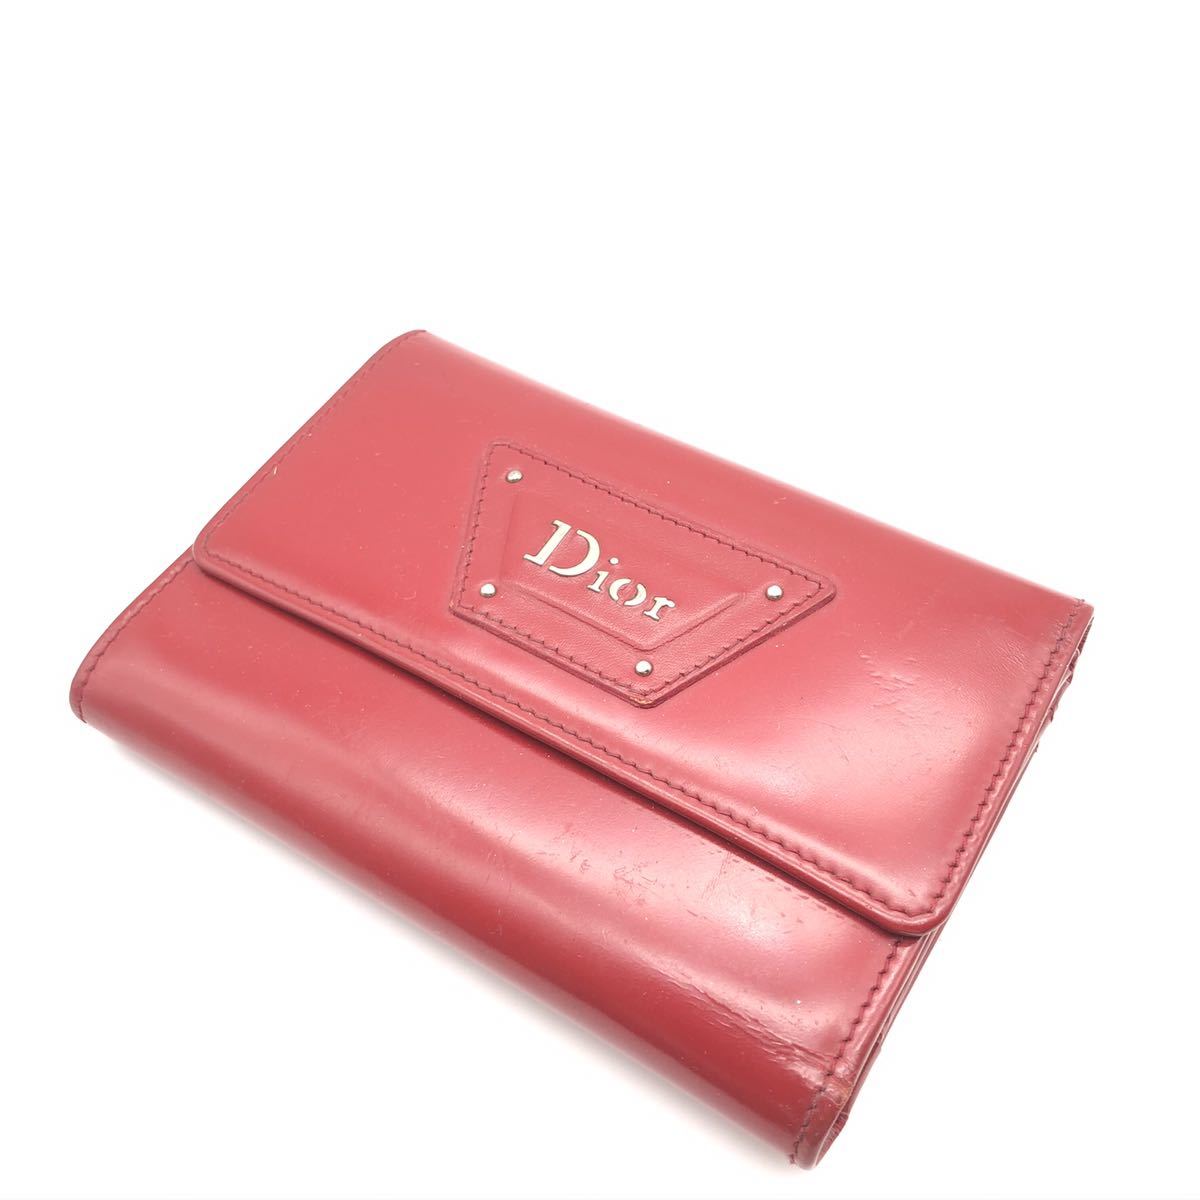 激安な Dior 折りたたみ財布 パテントレザー ディオール 女性用財布